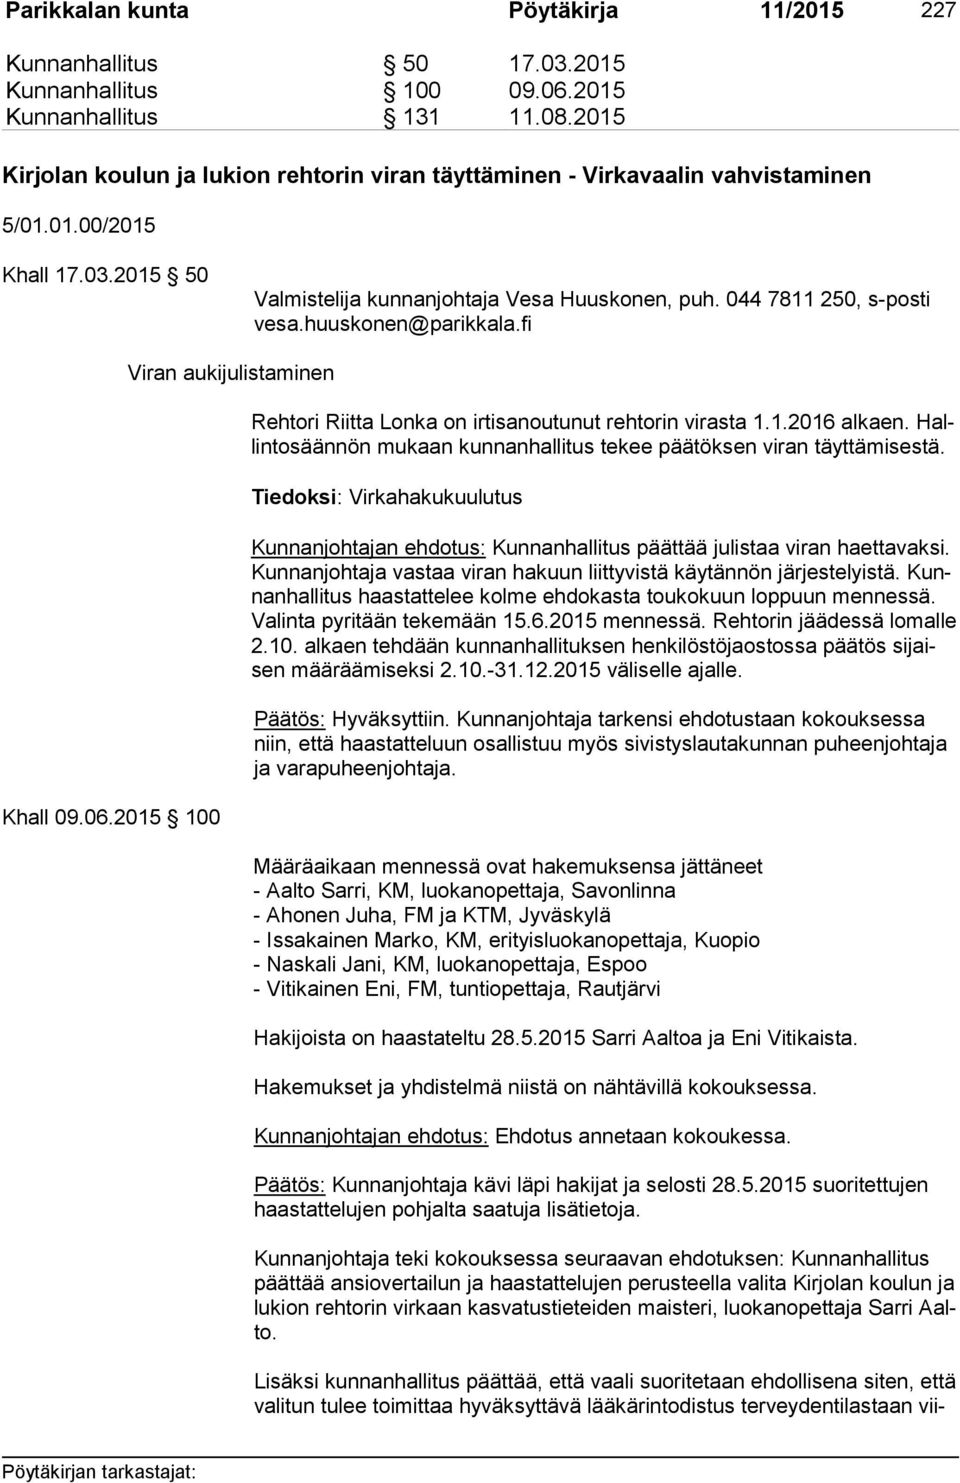 huuskonen@parikkala.fi Khall 09.06.2015 100 Viran aukijulistaminen Rehtori Riitta Lonka on irtisanoutunut rehtorin virasta 1.1.2016 alkaen.